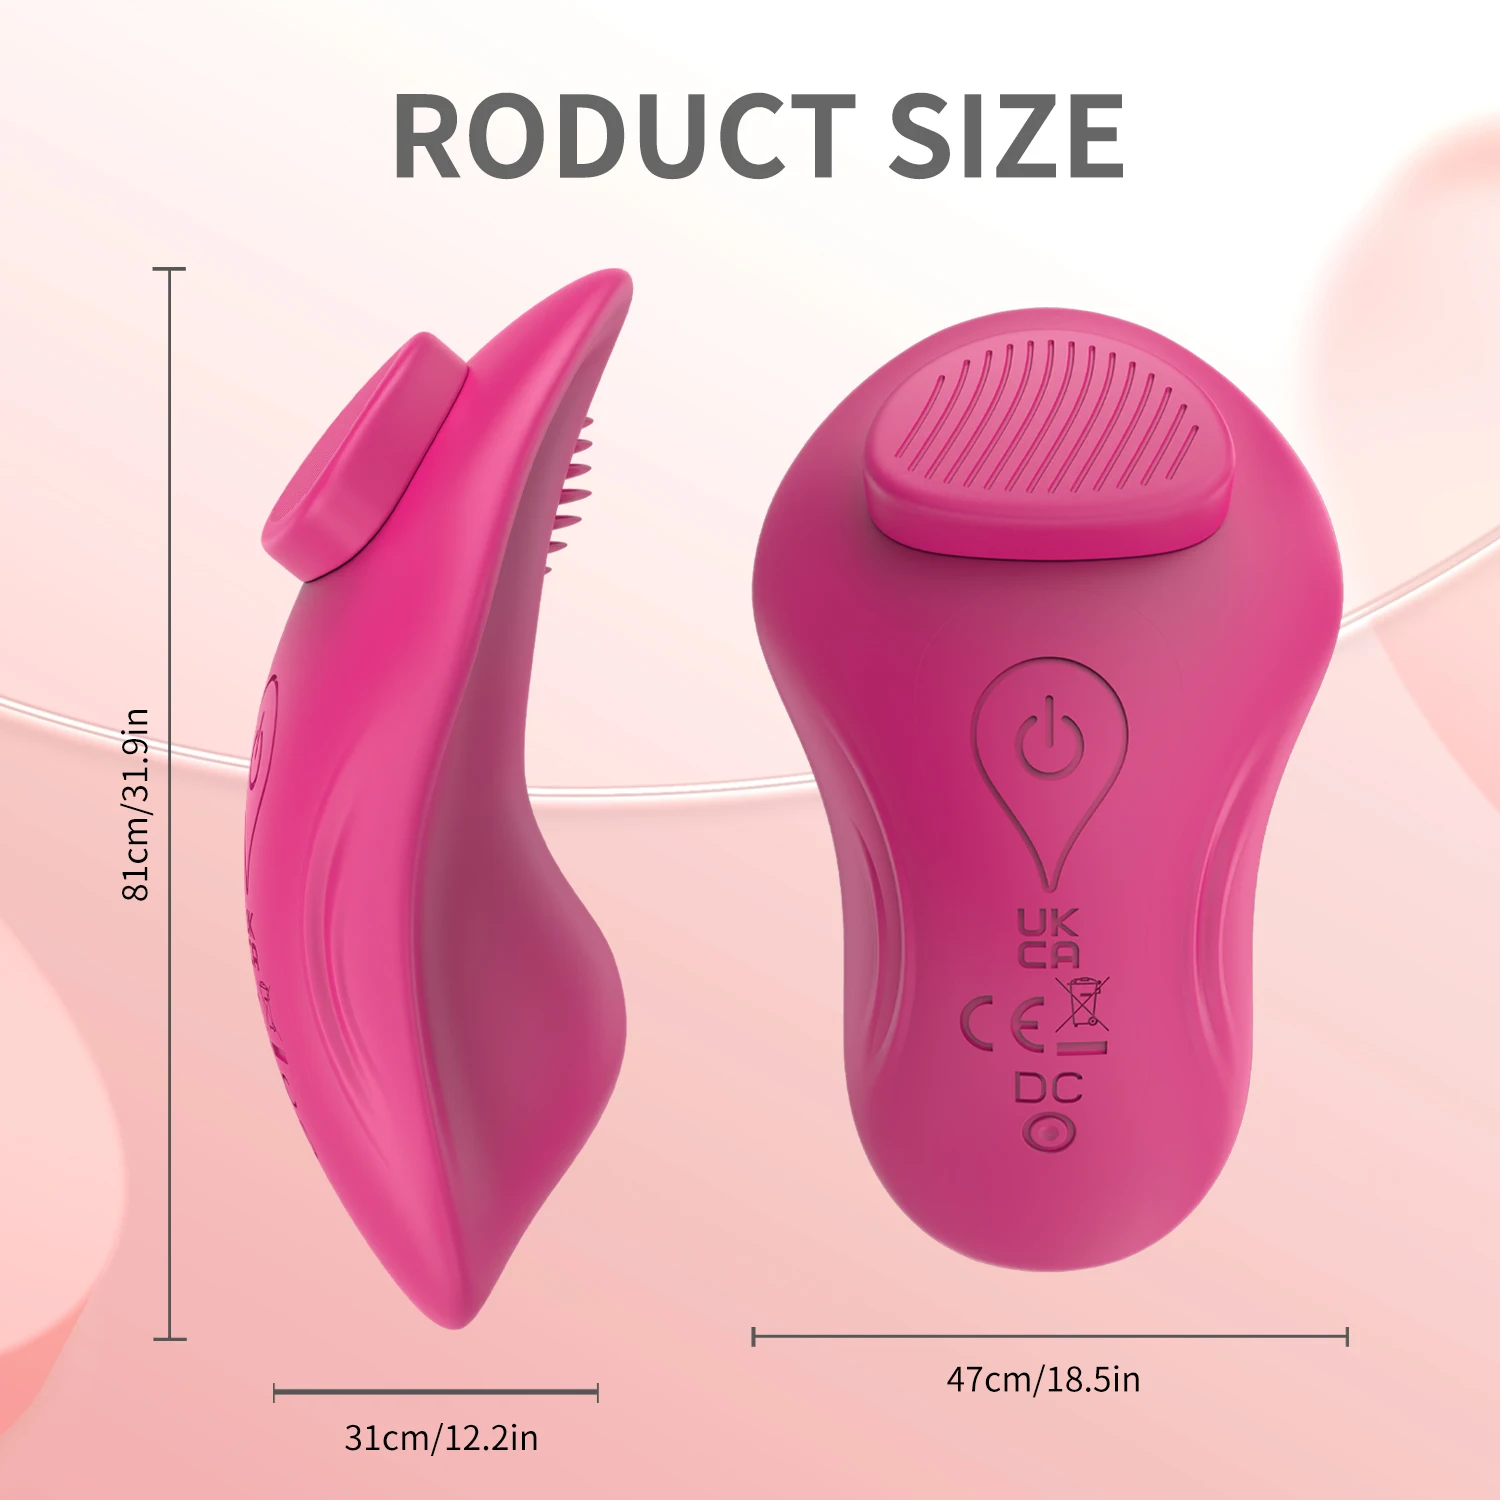 לביש Bluetooth יישום ויברטור לנשים שלט אלחוטי רוטט ביצה לגירוי הדגדגן הנשי צעצועי מין לזוגות - 4